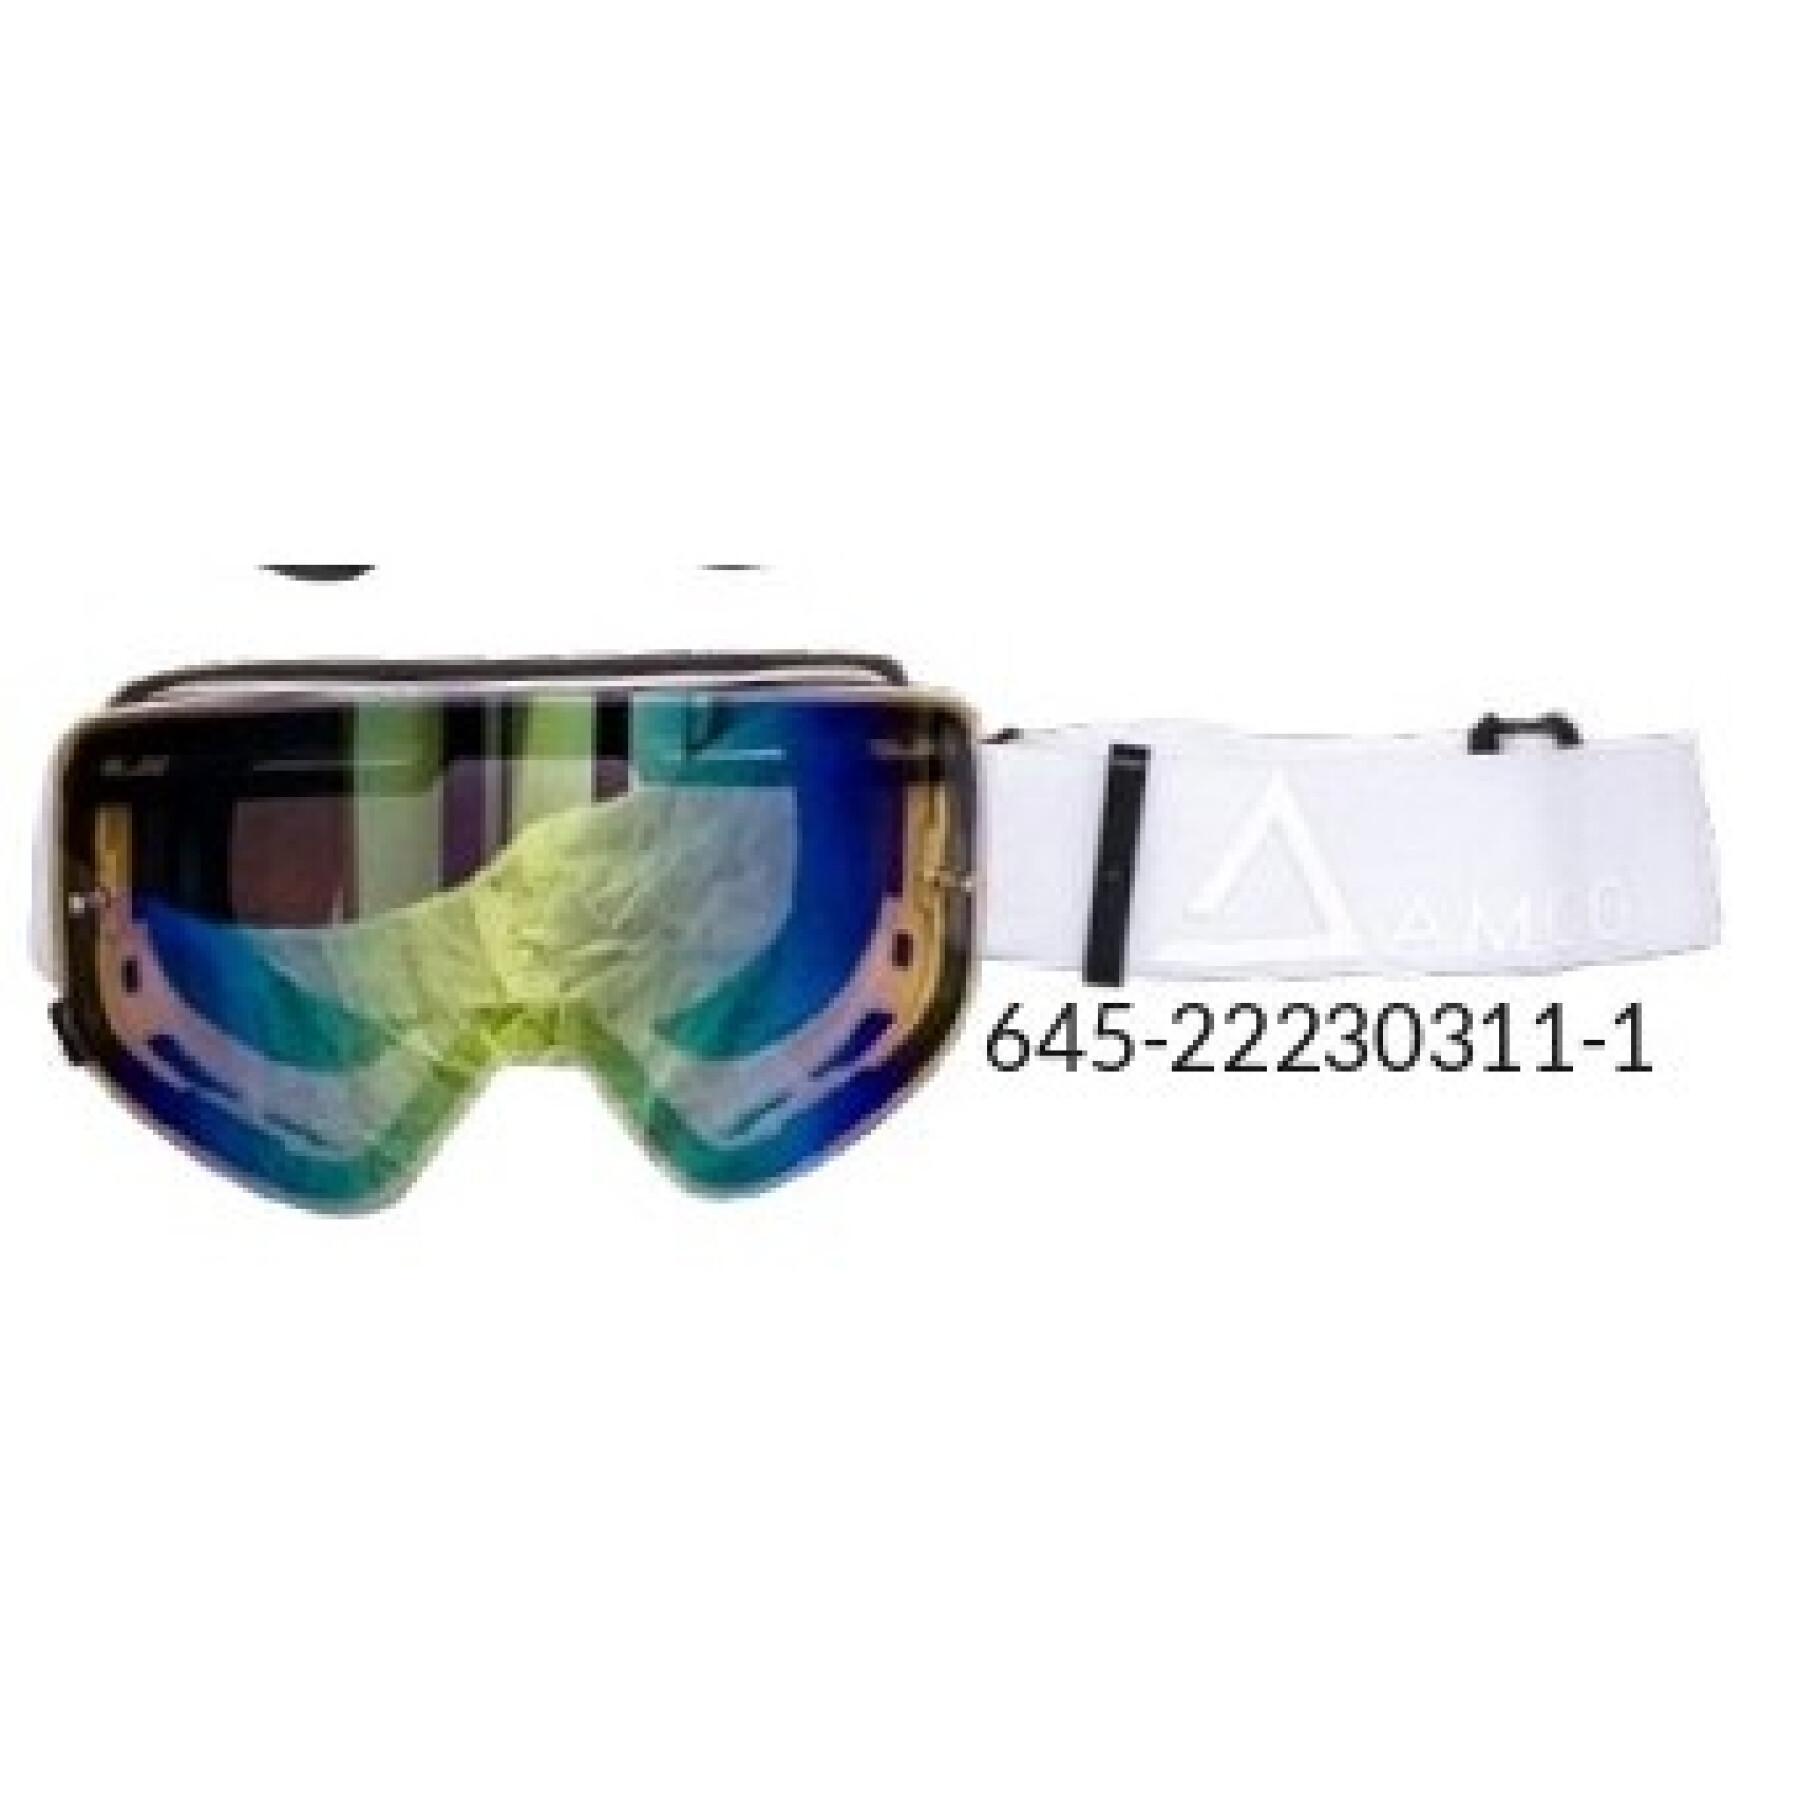 Óculos cruzados de motocicleta com lente espelhada dourada Amoq Vision Magnetic